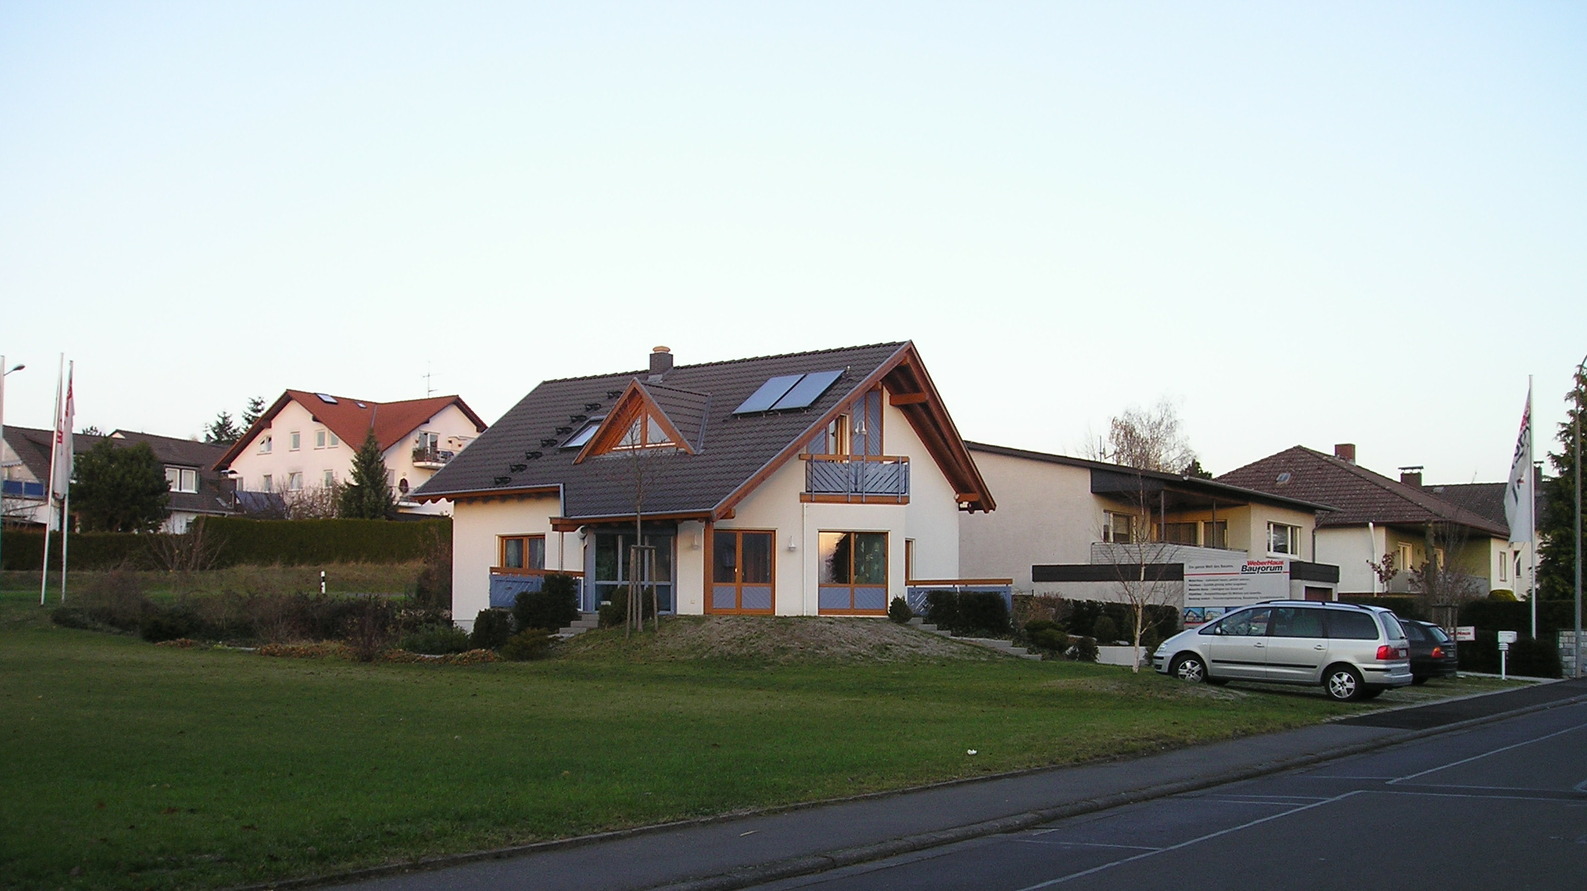 Einfamilienhaus vom Fertighaushersteller WeberHaus